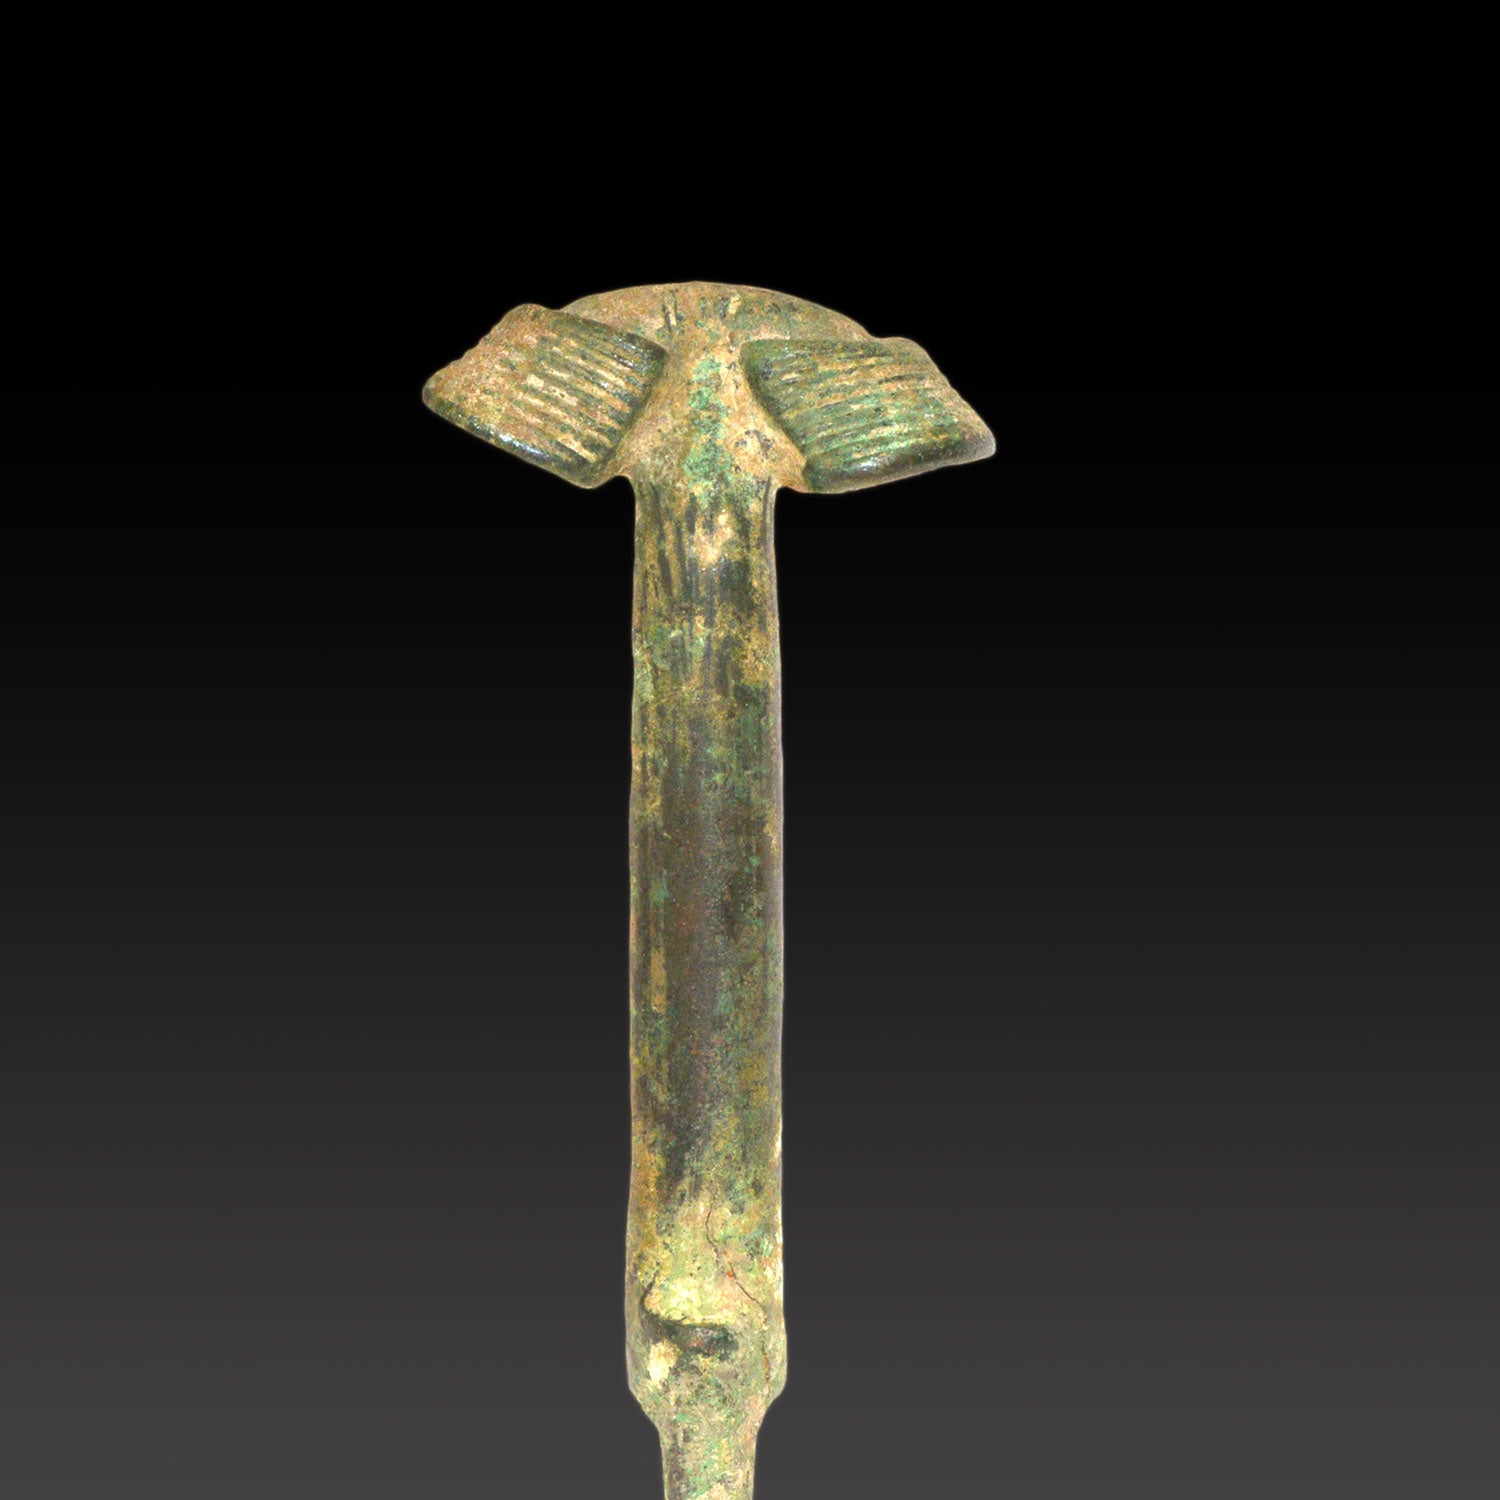 A Near Eastern Bronze "Ear" Pommel Sword, Late Bronze Age, ca. 1200-800 BCE